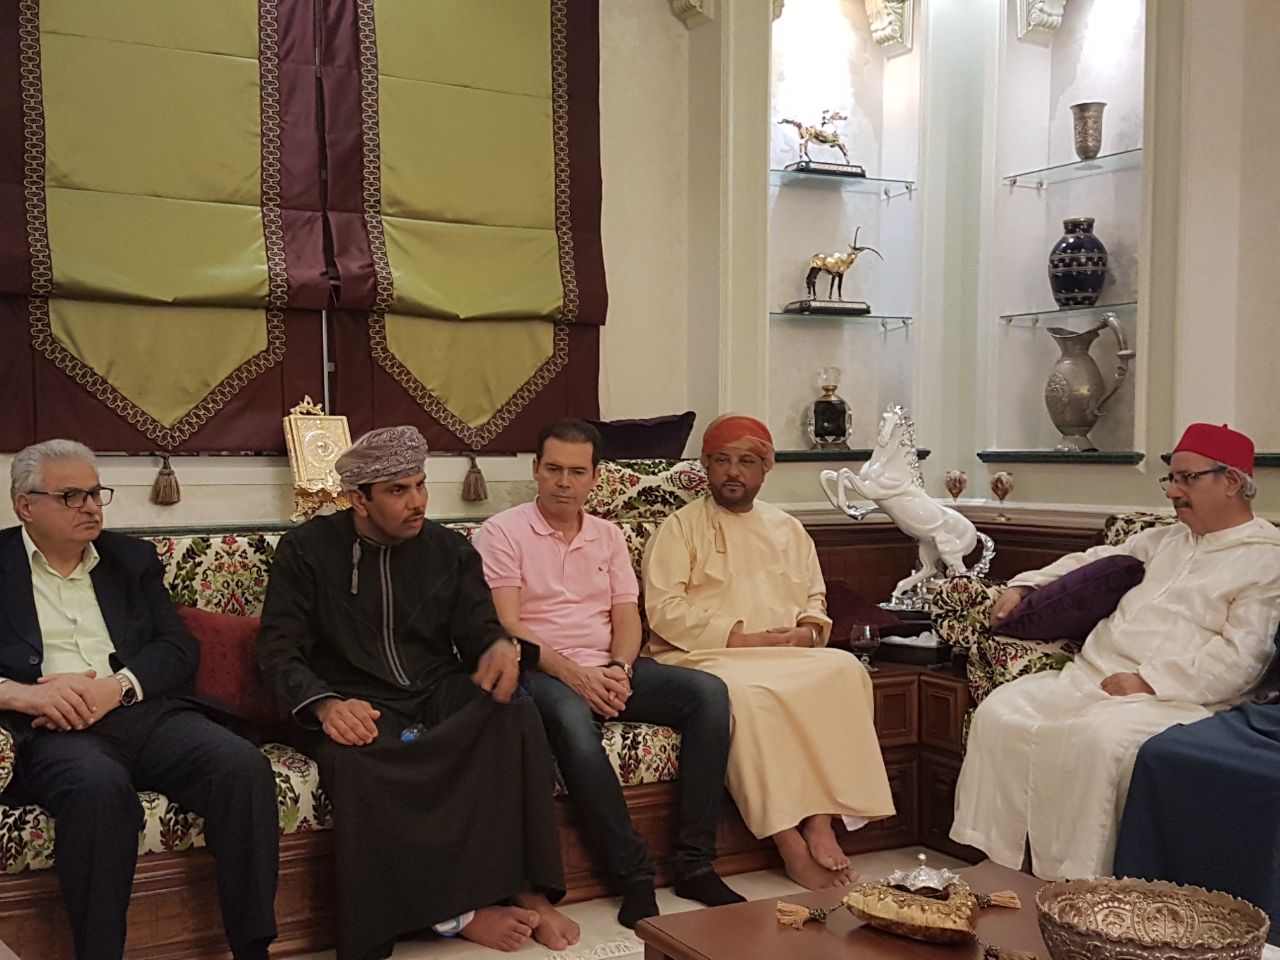 جلسة رمضانية بخيمة صاحب السمو السيد محمد آل سعيد